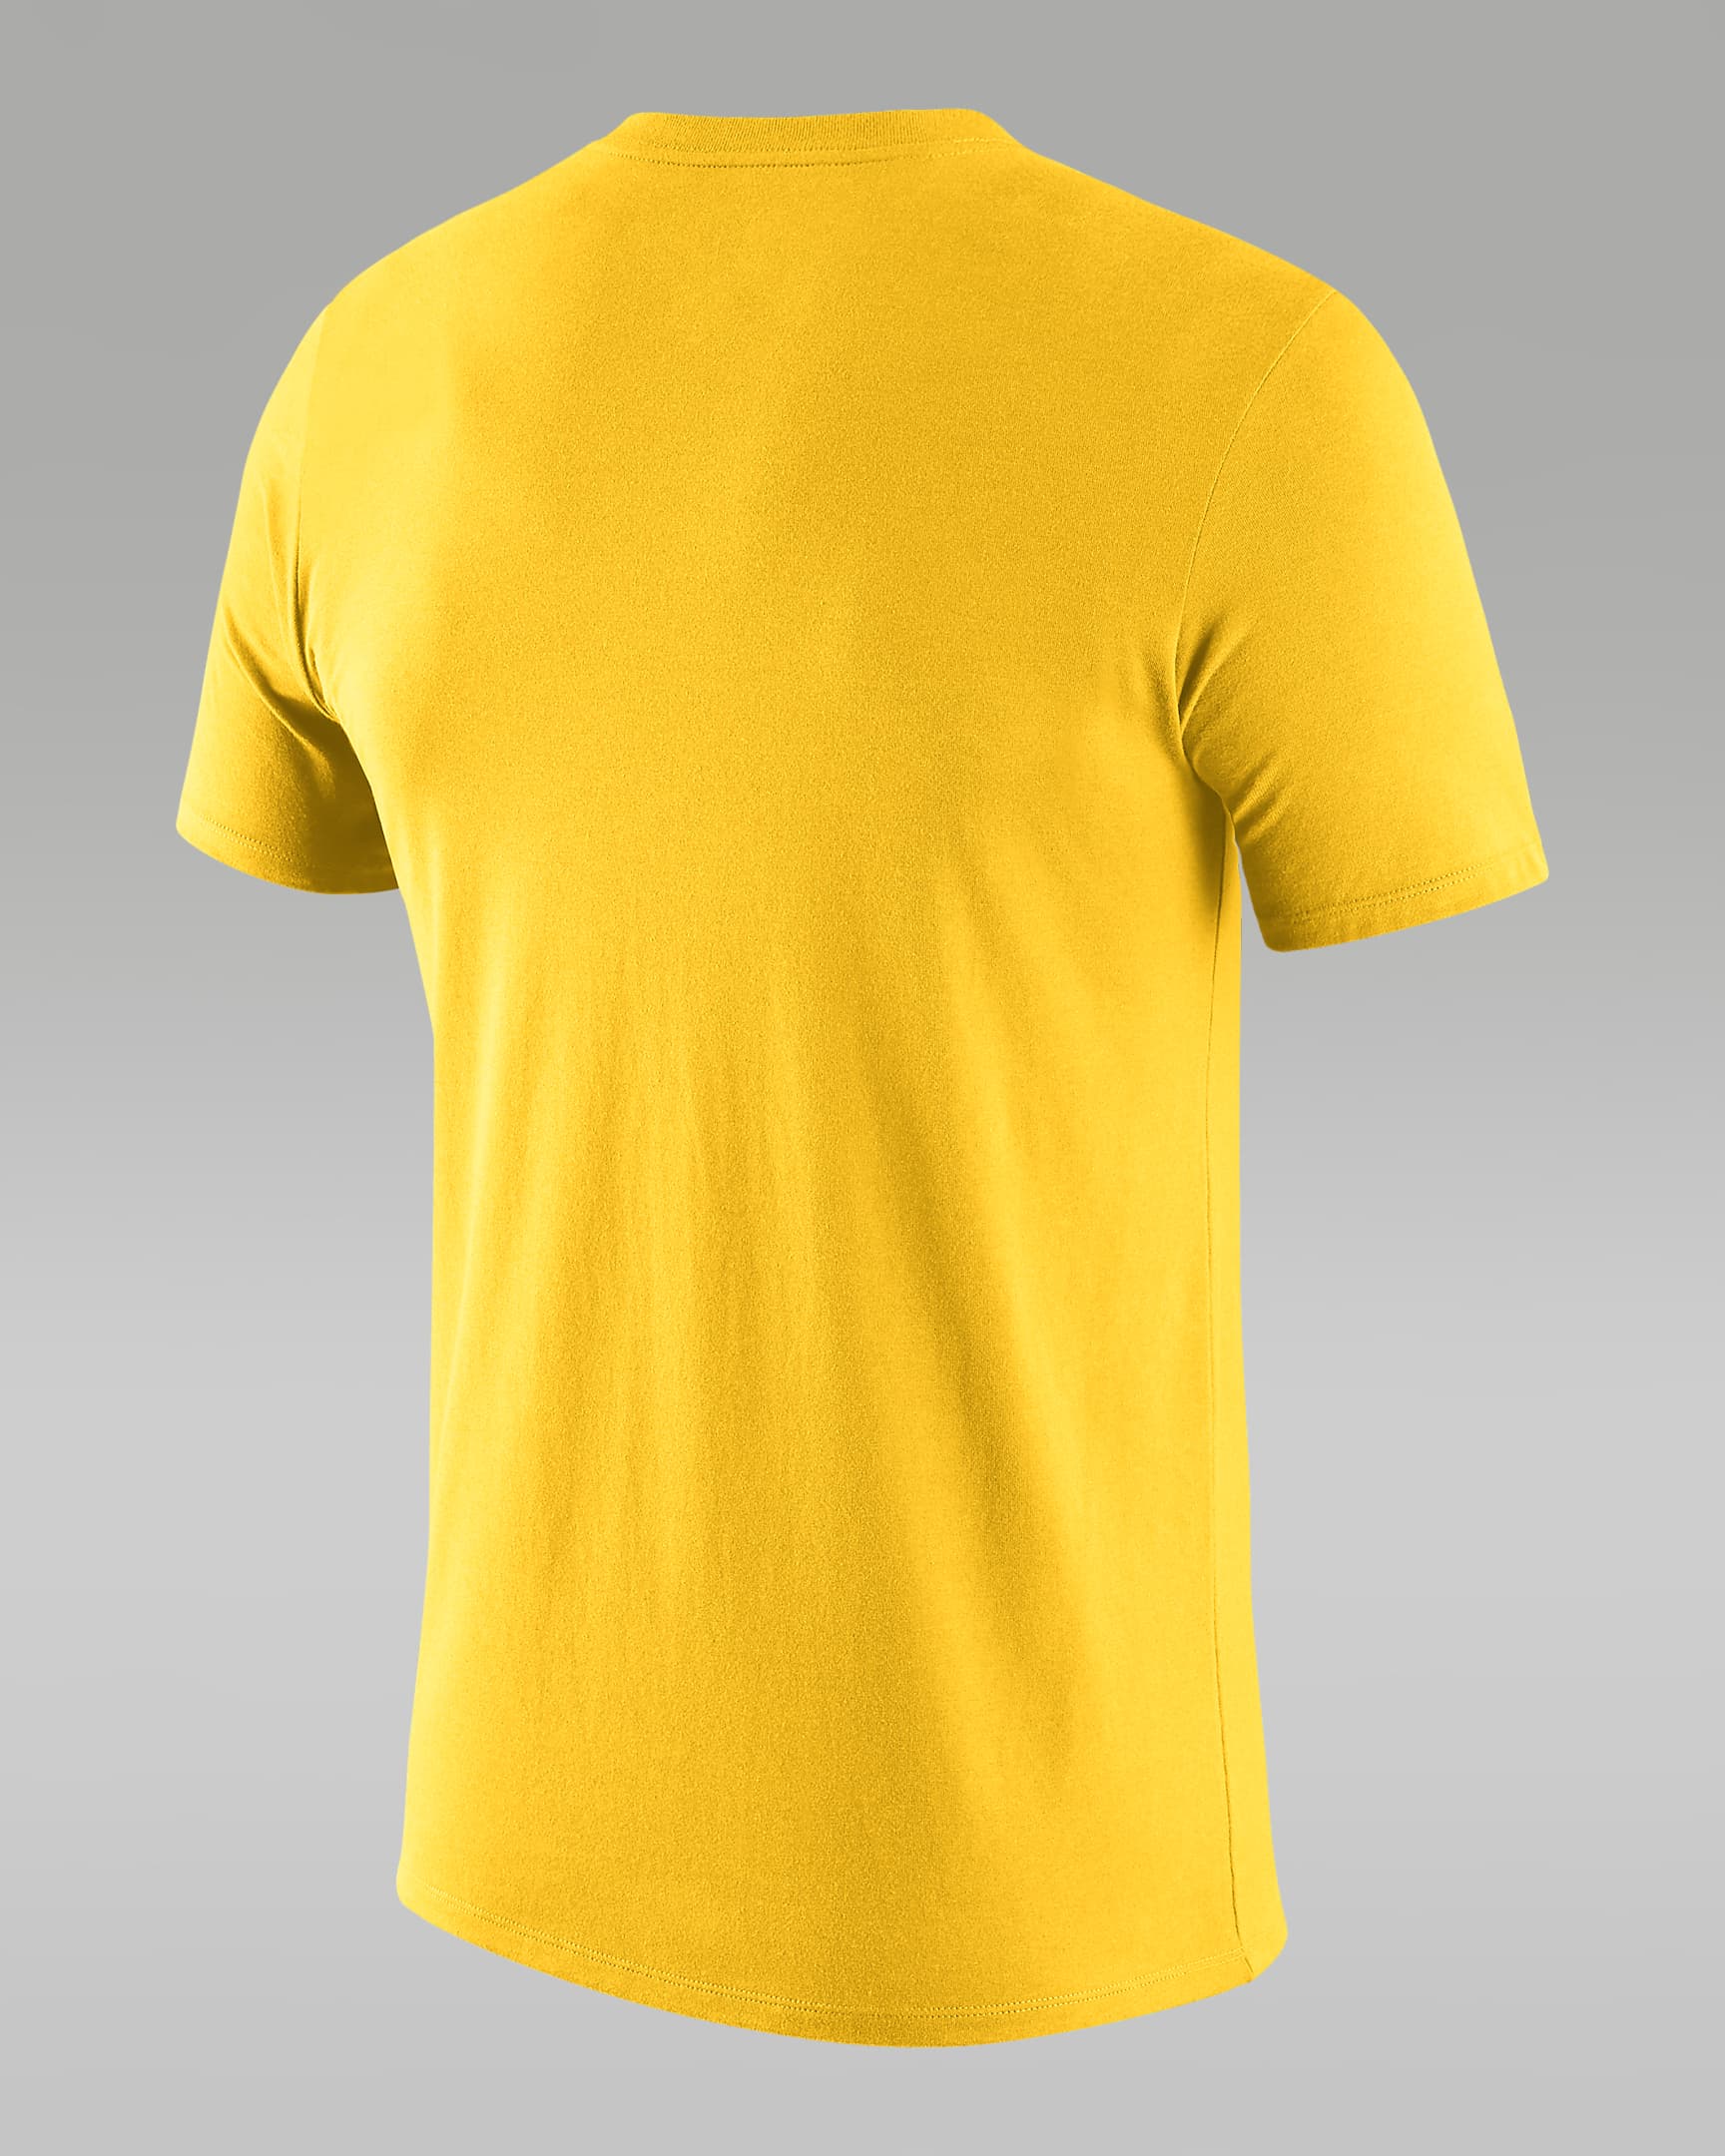 Golden State Warriors Essential Men's Jordan NBA T-Shirt. Nike.com